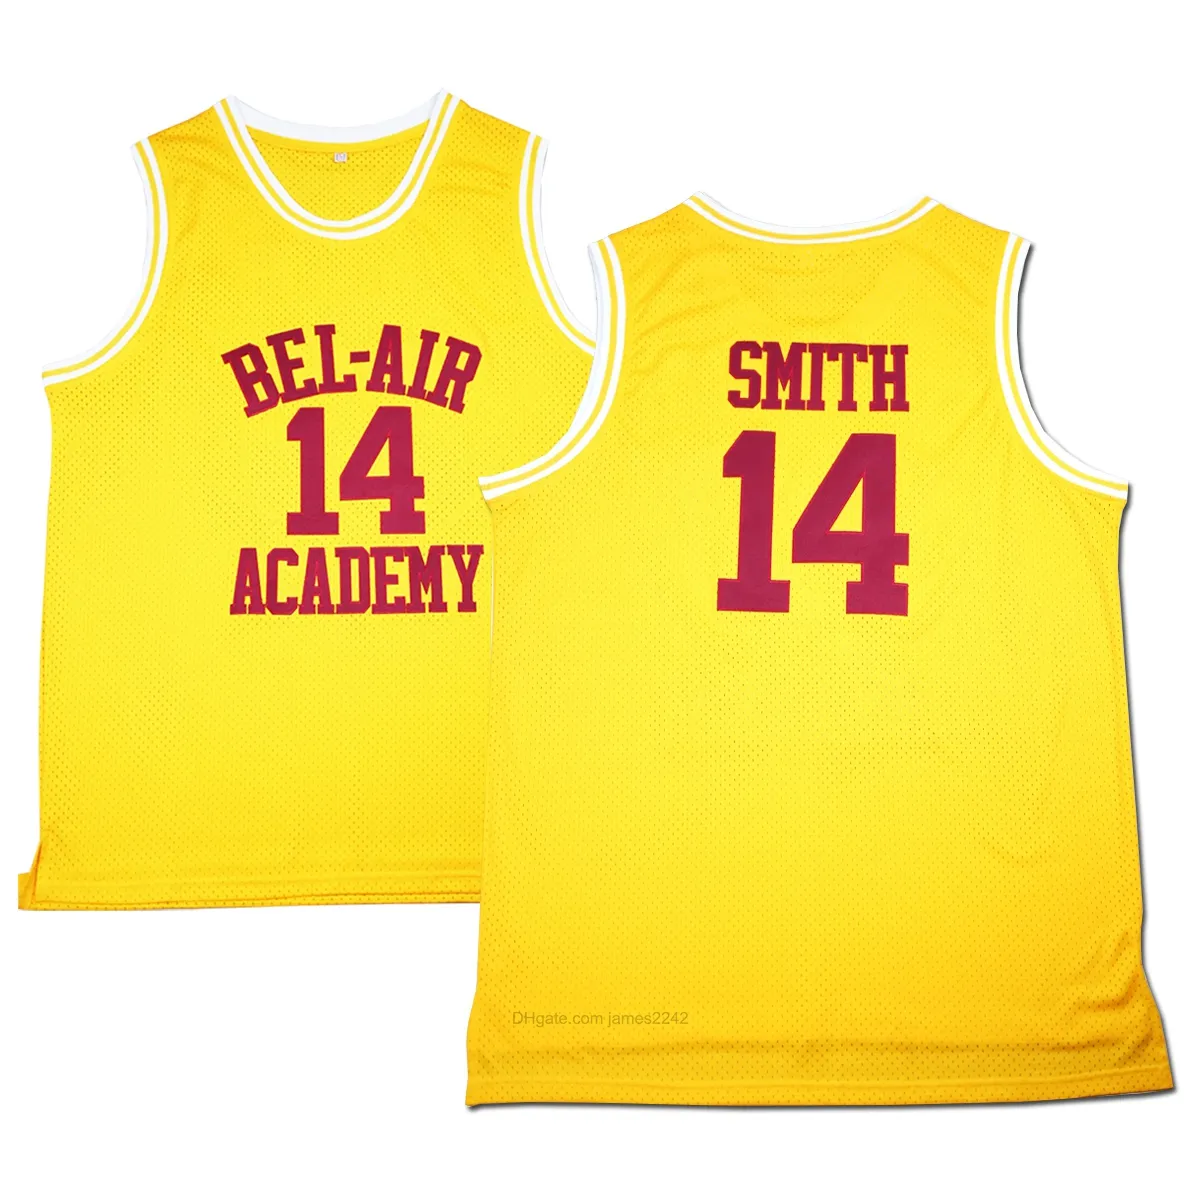 Navio de nós #Movie Men's Basketball Jerseys O Príncipe Fresco de Bel-Air 14 Will Smith Jersey Amarelo Academia Size S-3XL